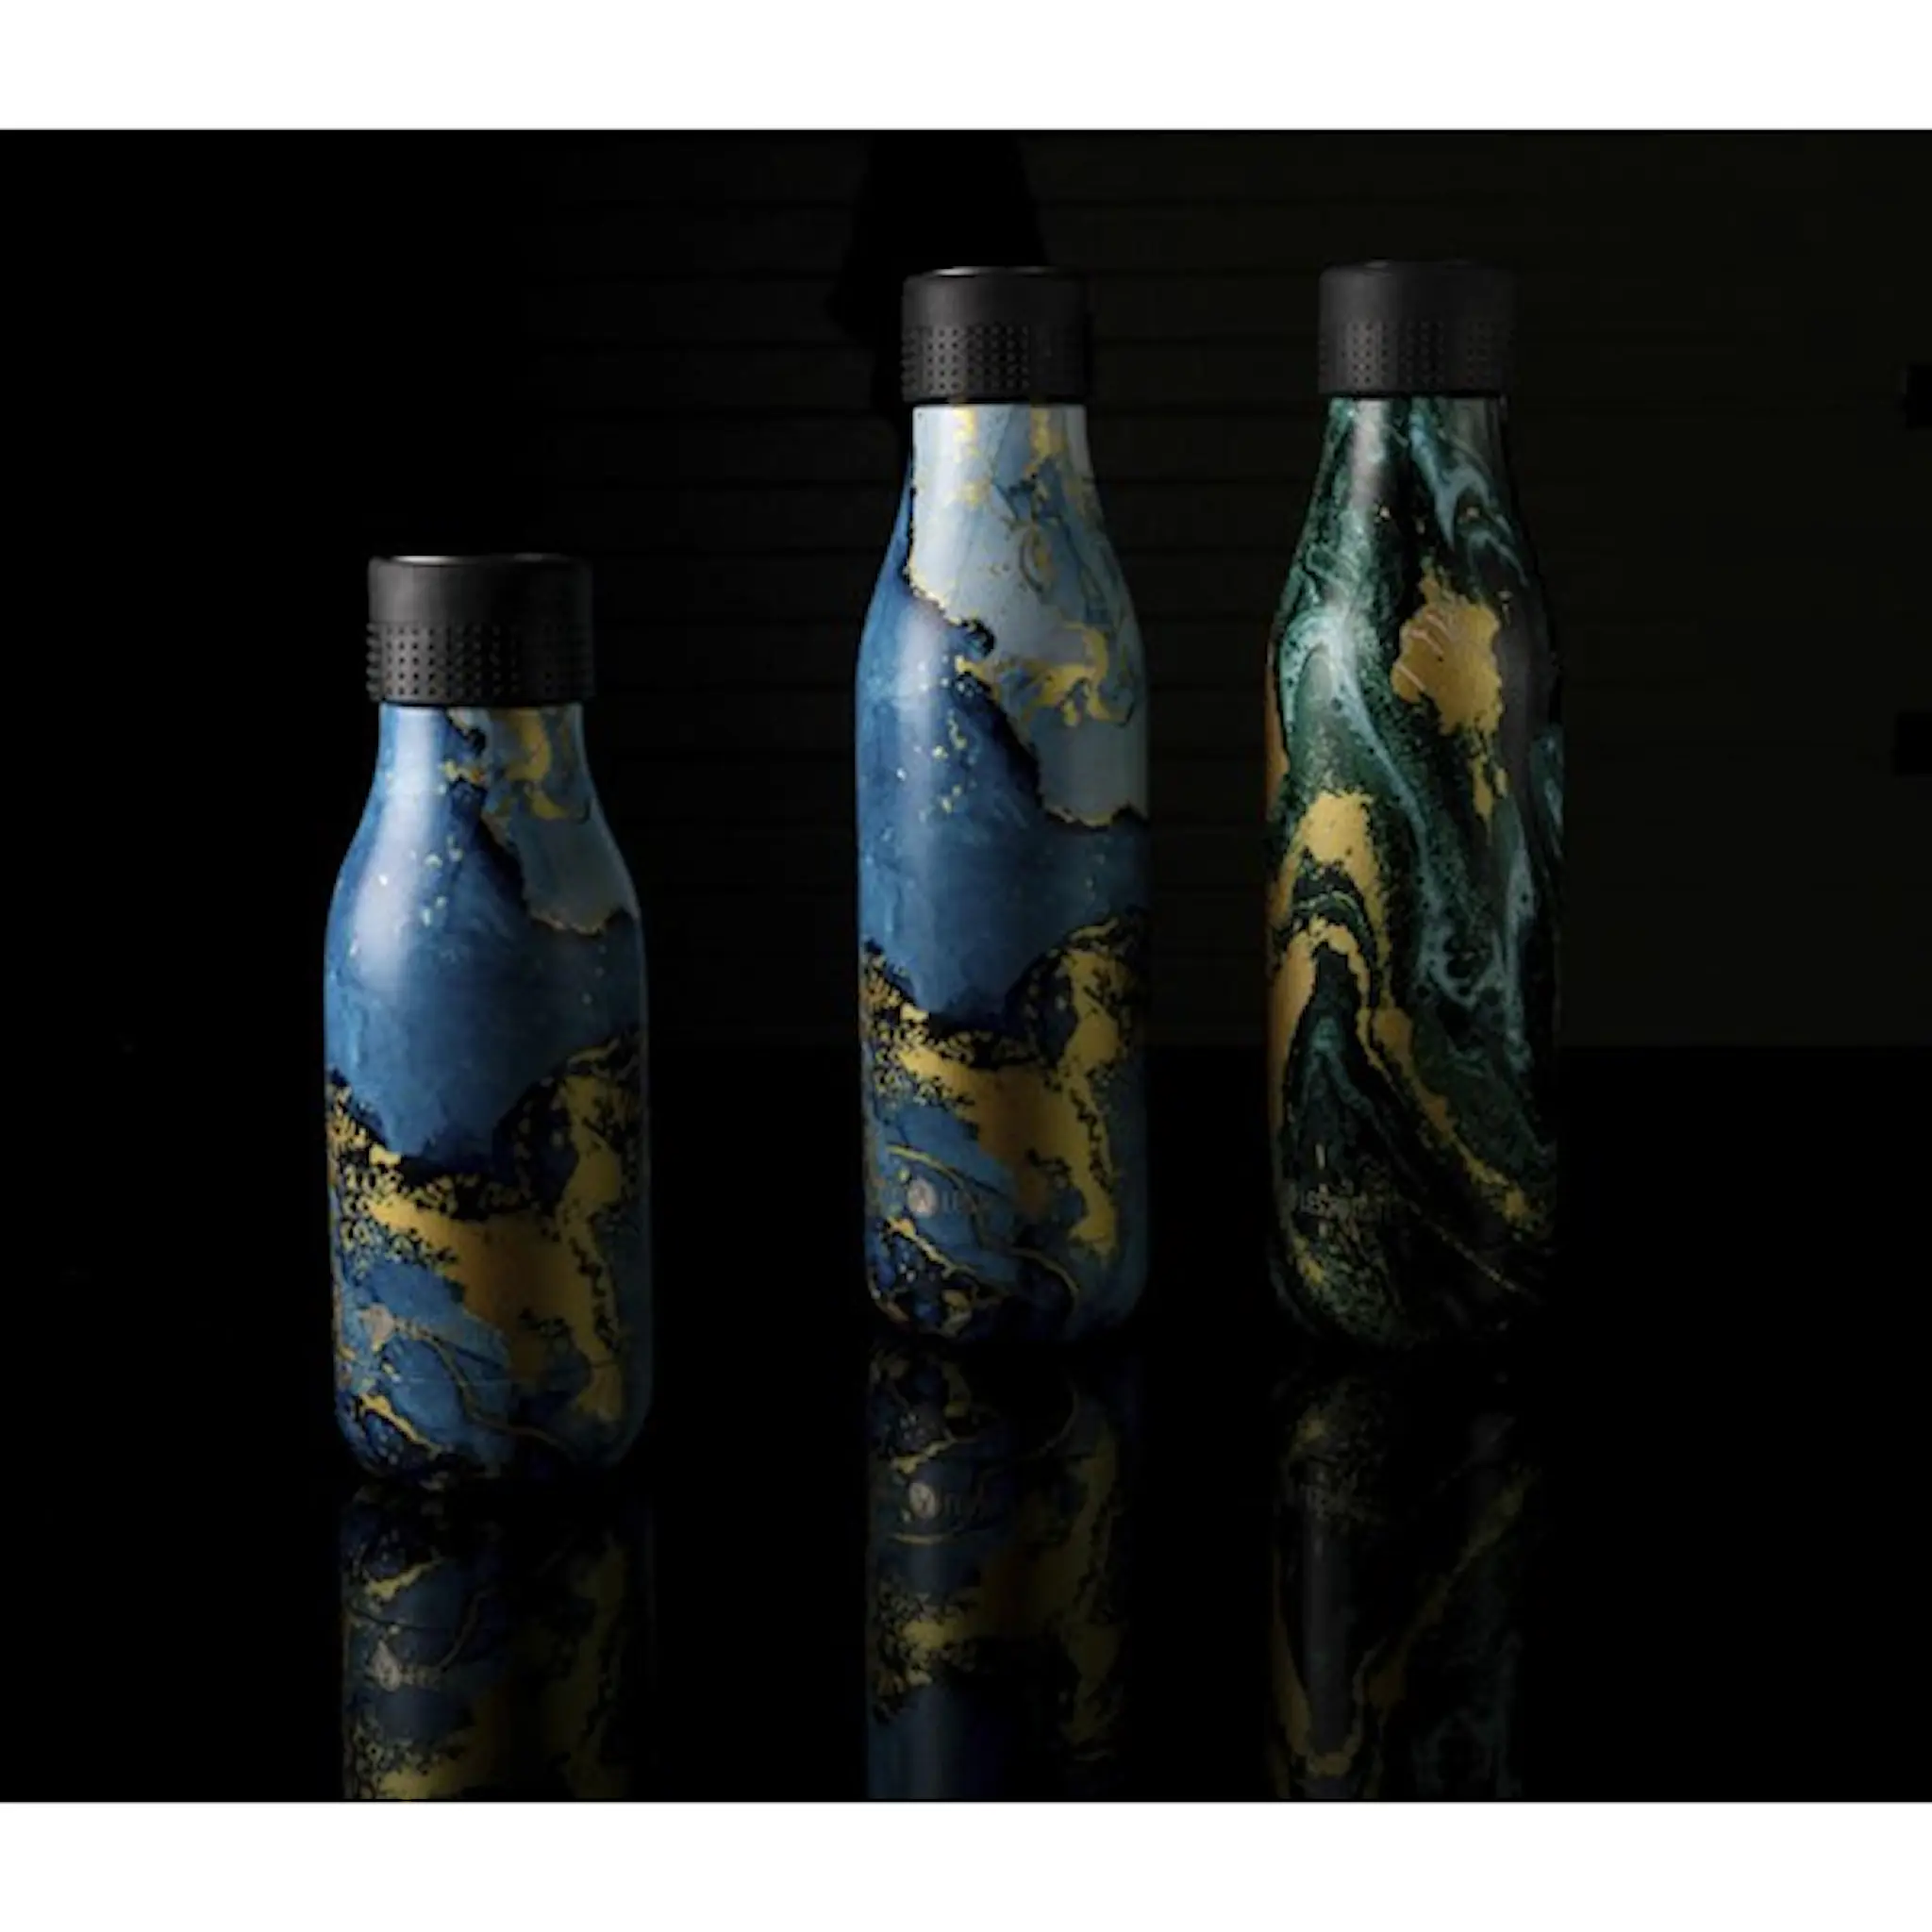 Les Artistes Bottle Up Design Termoflaska 0,28L Blå Marmor